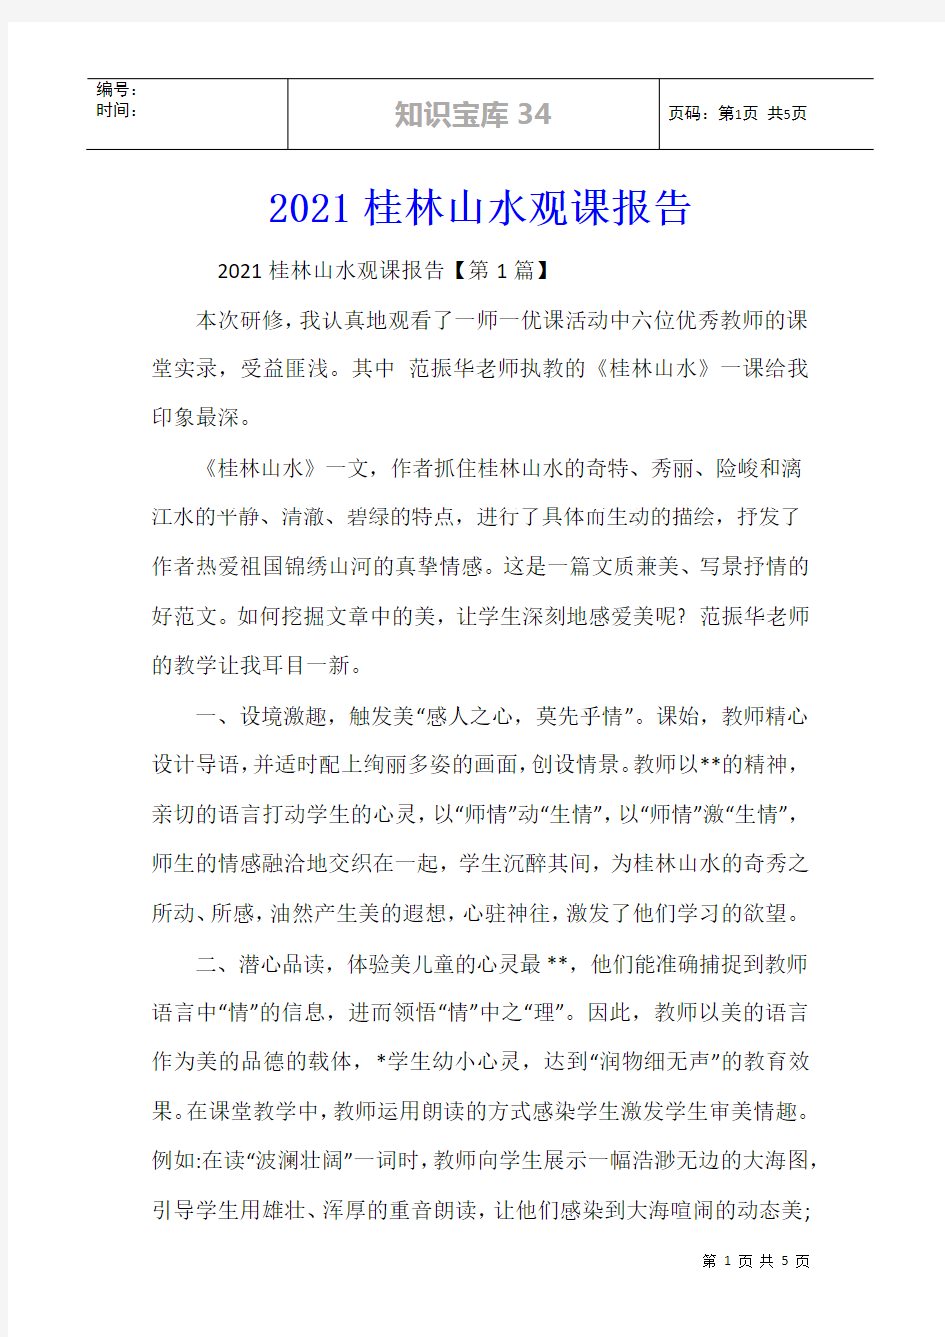 2021桂林山水观课报告